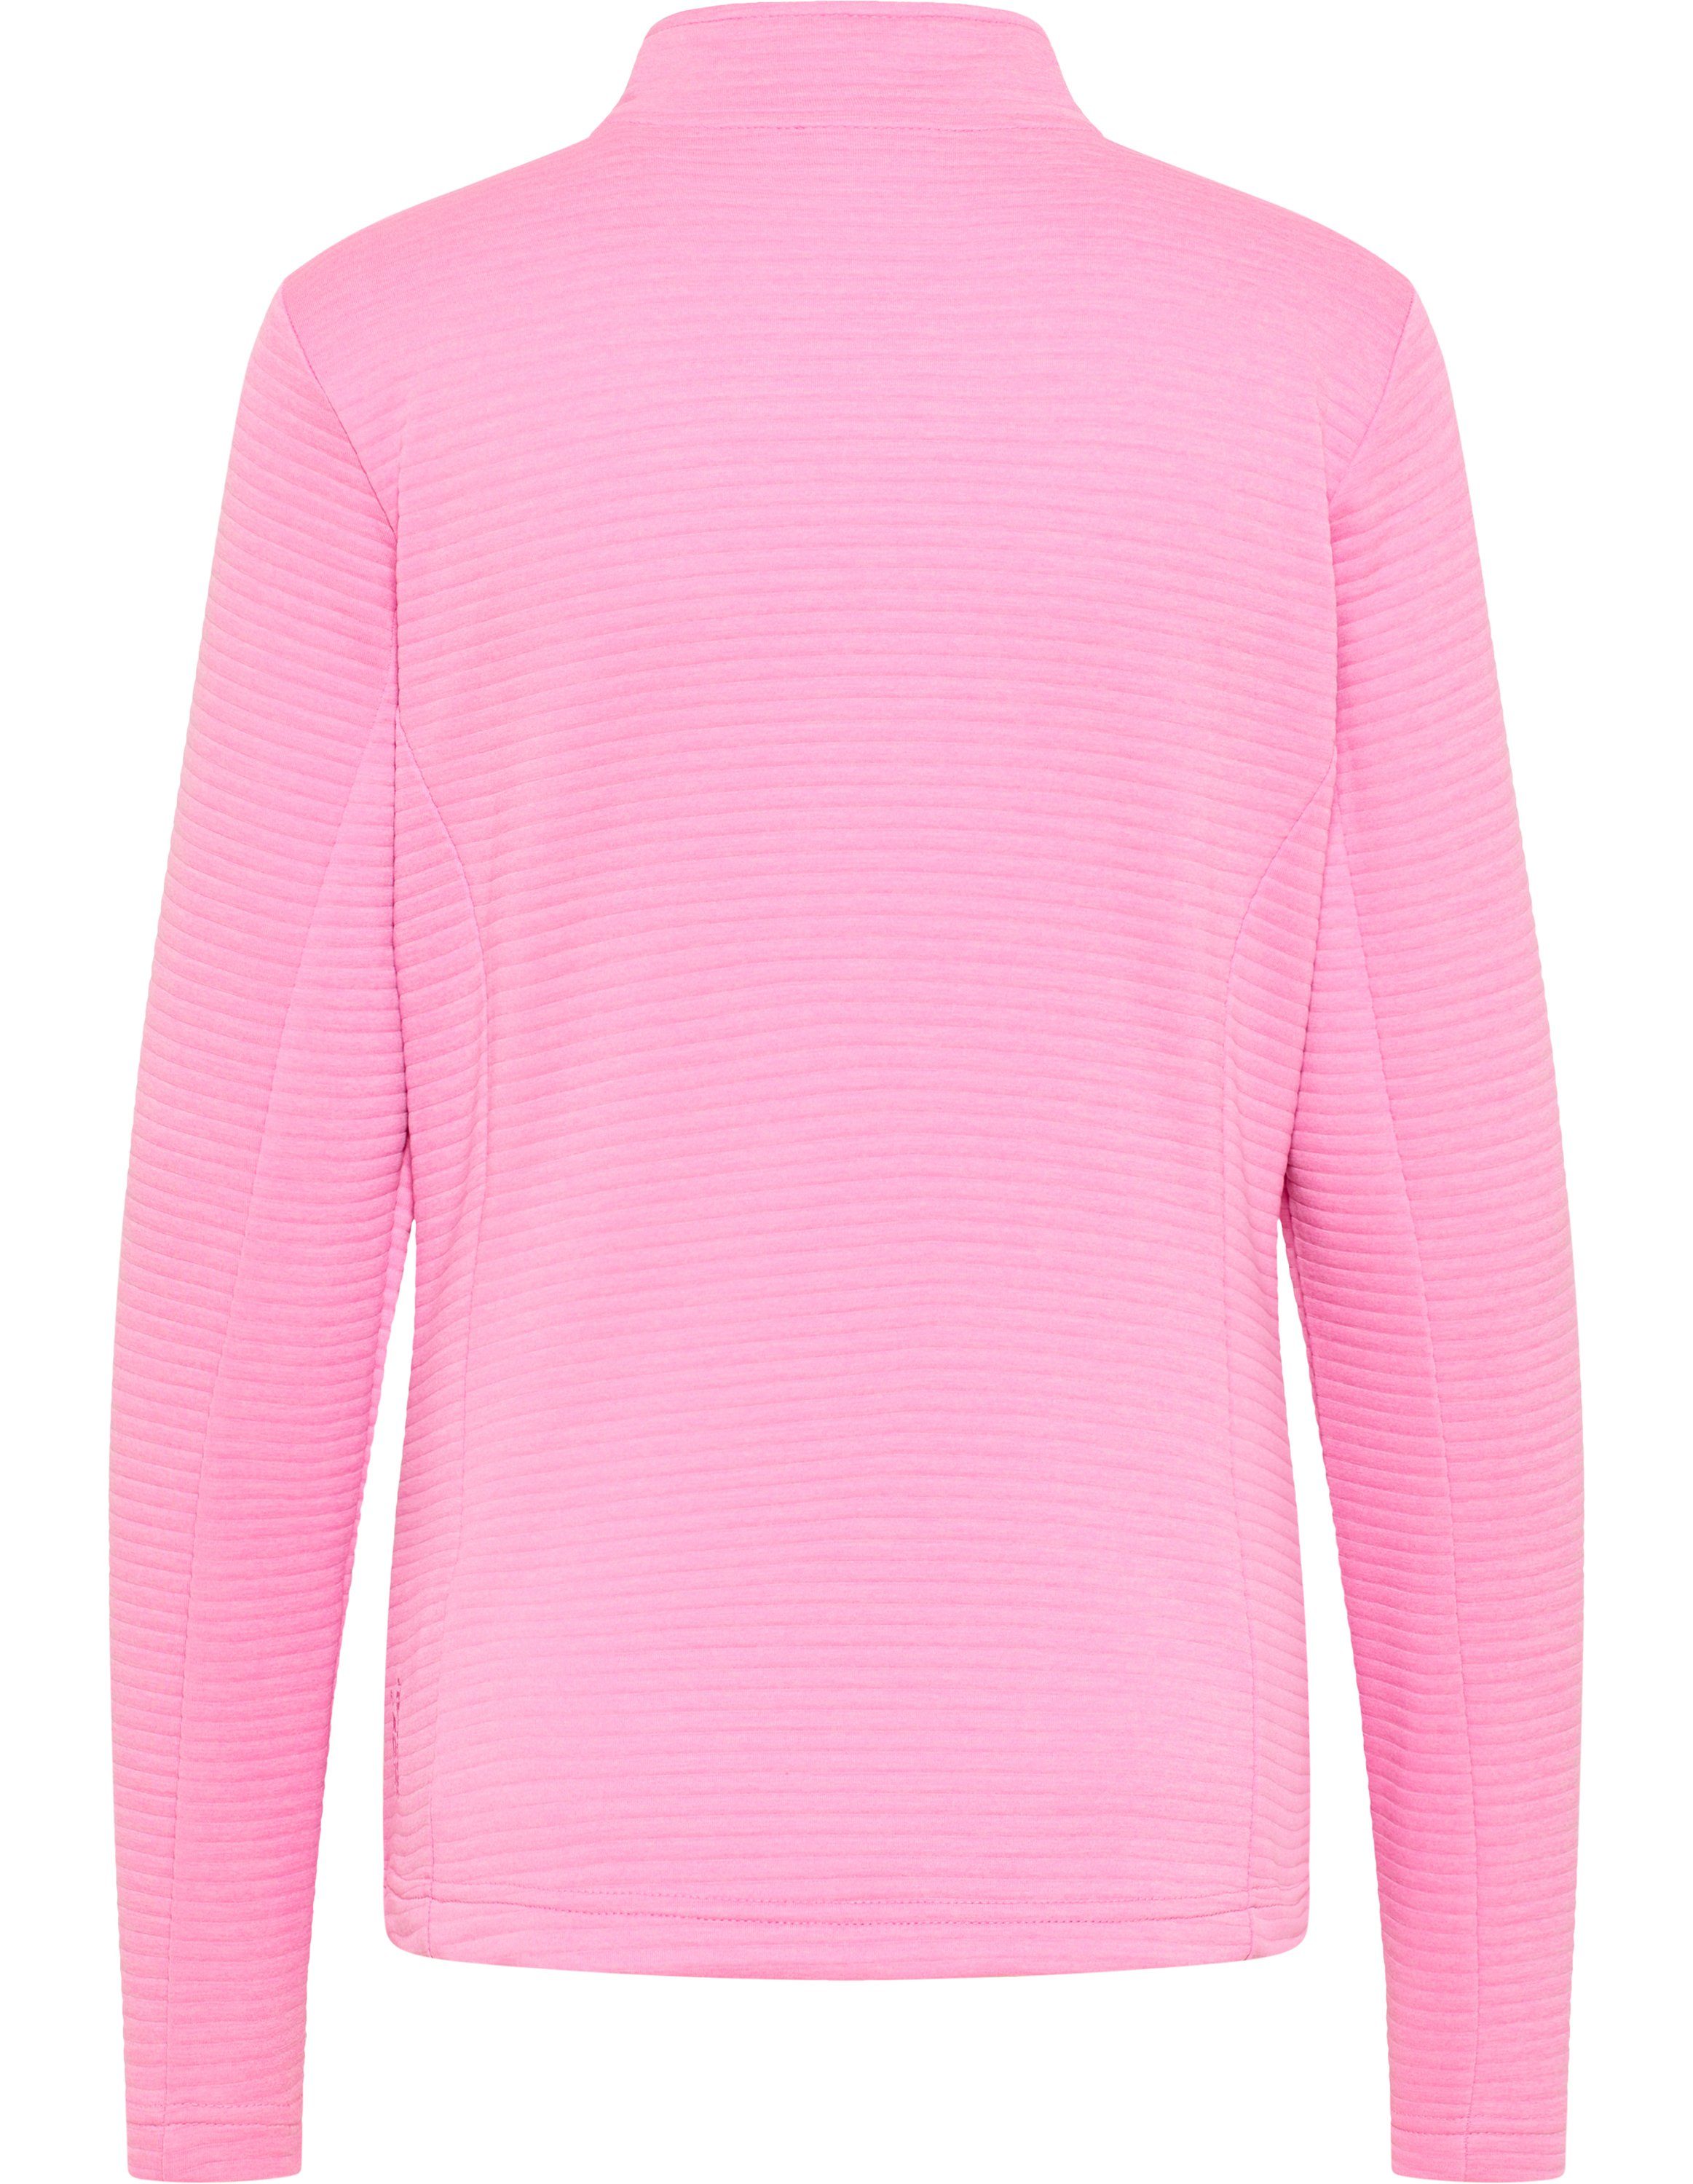 Jacke PEGGY Joy Trainingsjacke melange pink Sportswear cyclam